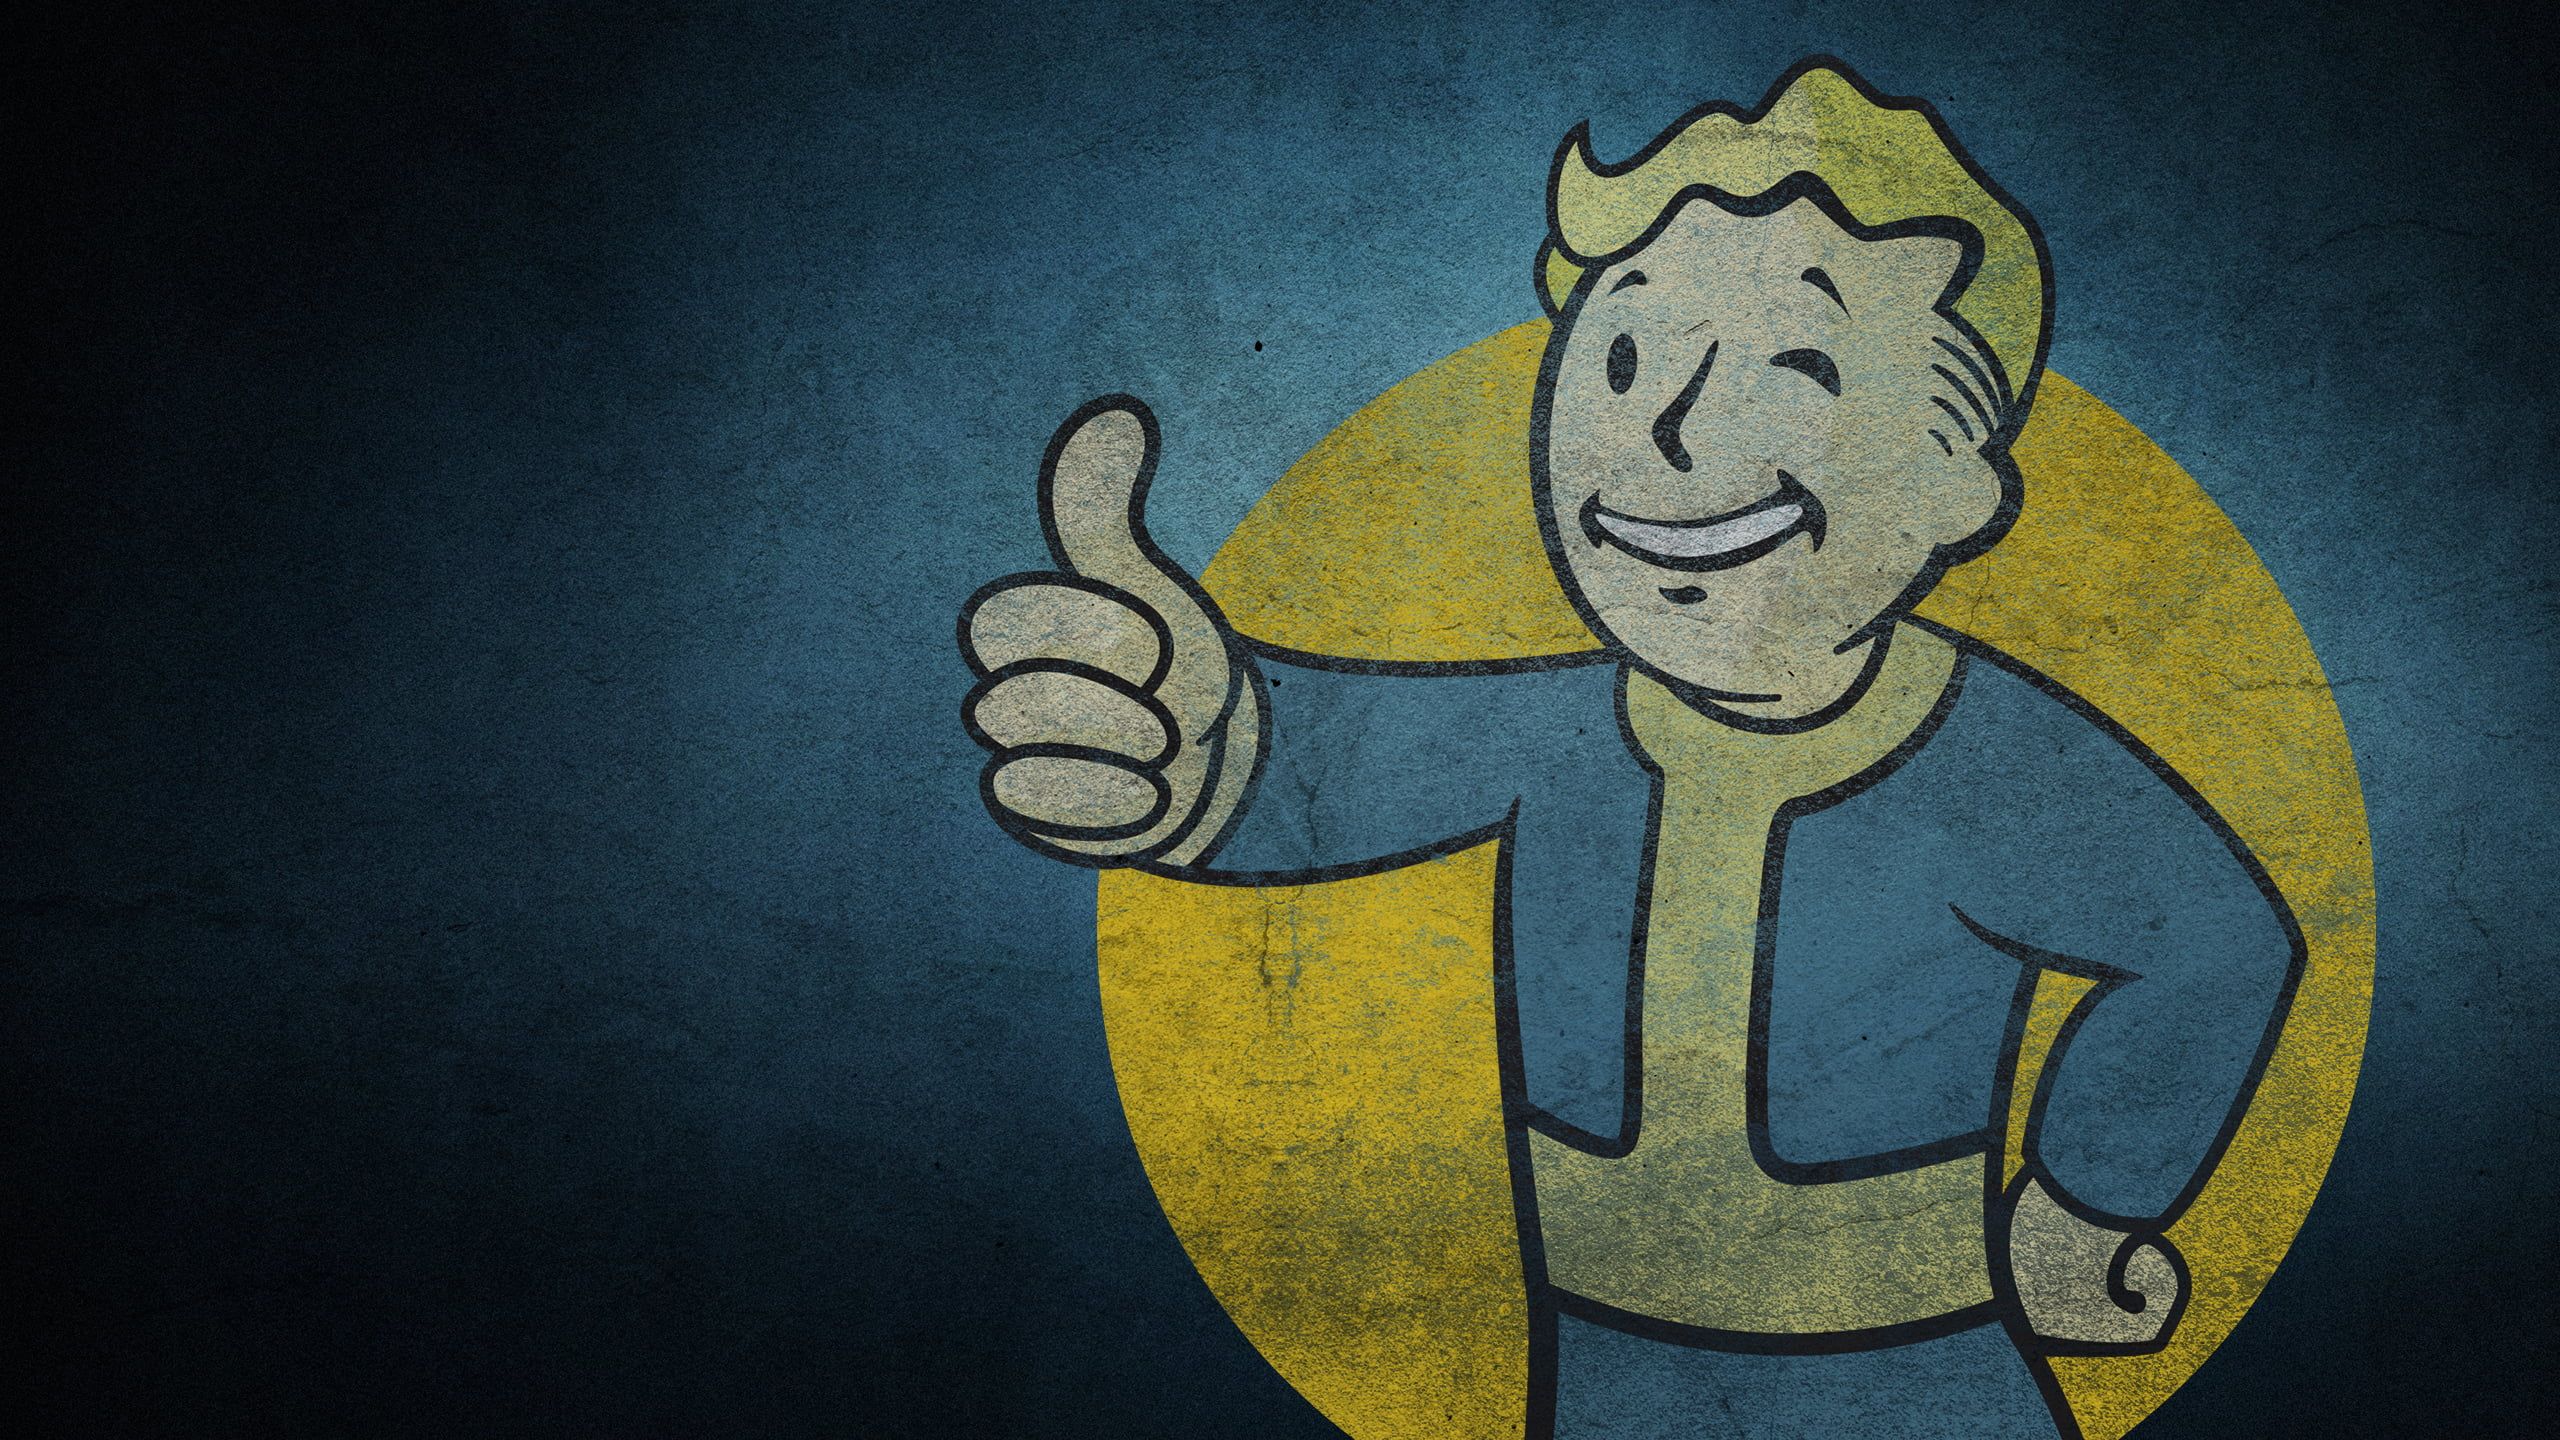 Съёмки сериала Fallout могут стартовать в июне 2022 года